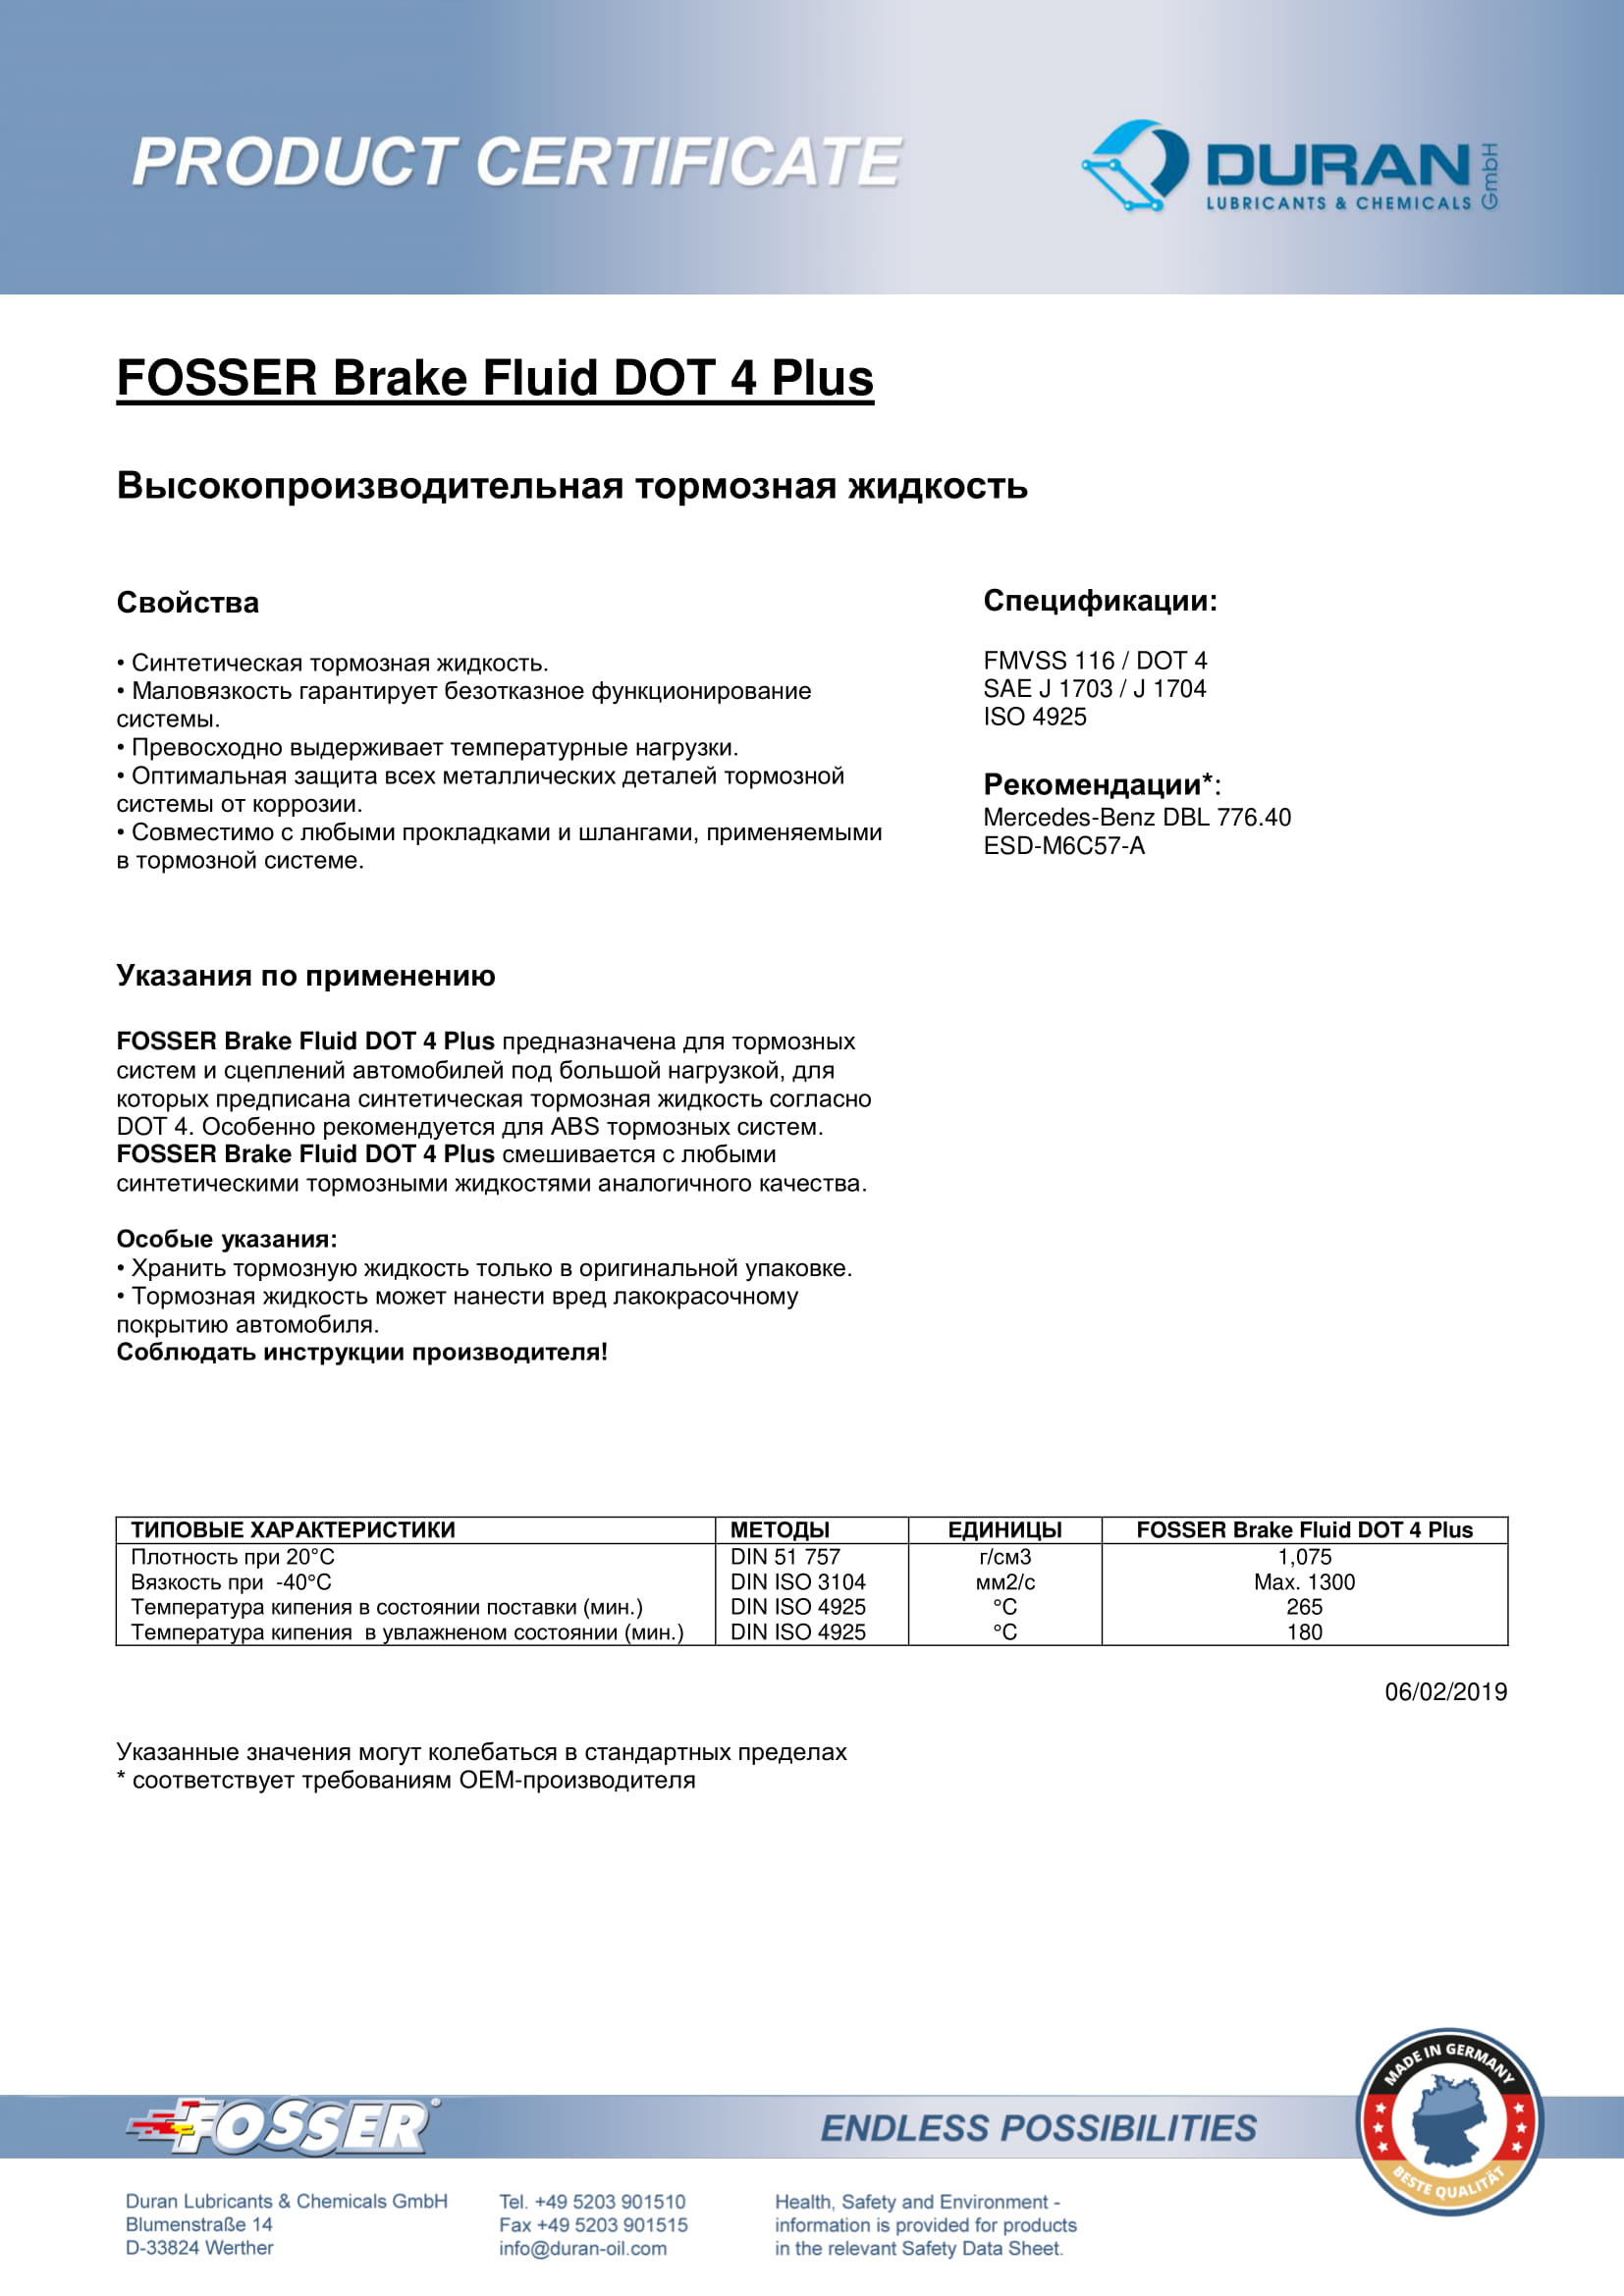 Товарный сертификат Fosser Brake Fluid Dot 4 Plus